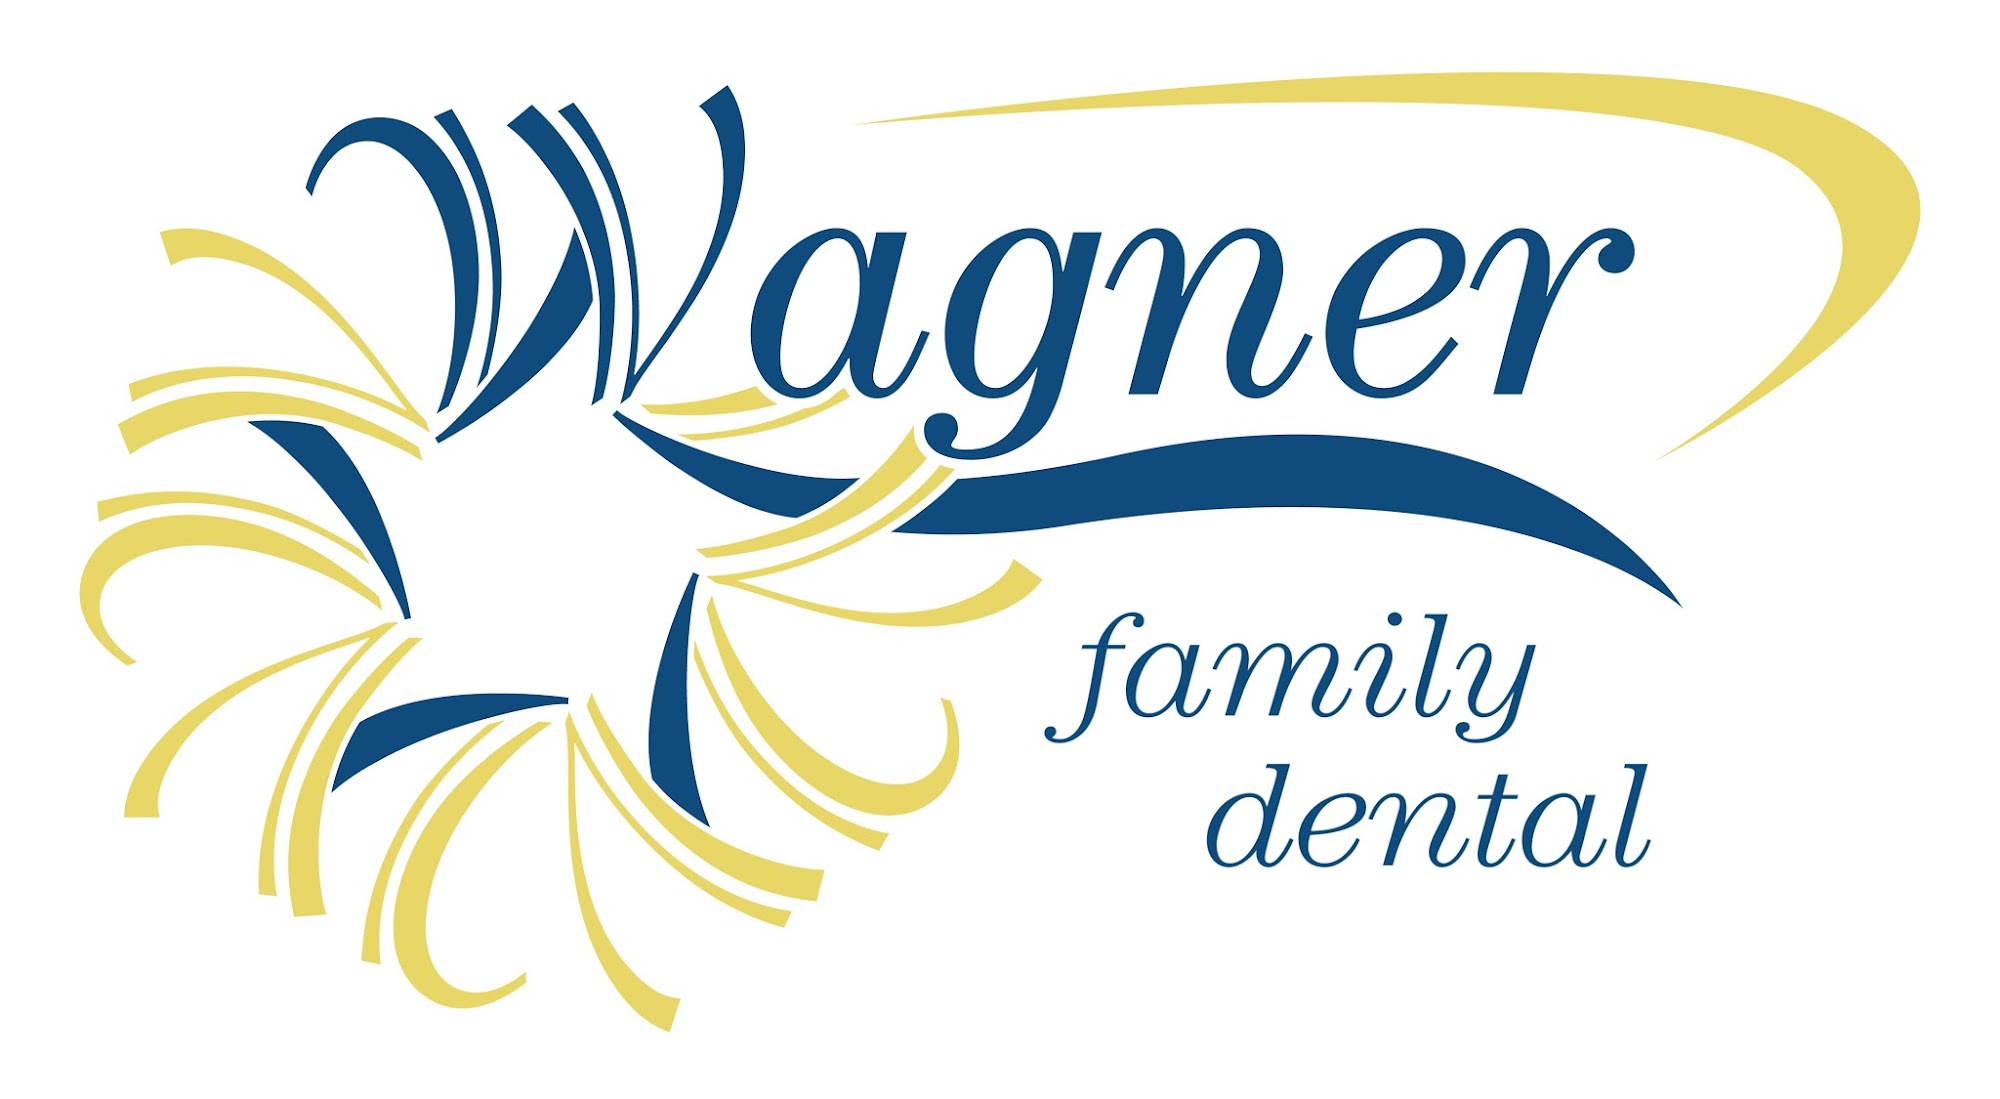 Wagner Family Dental